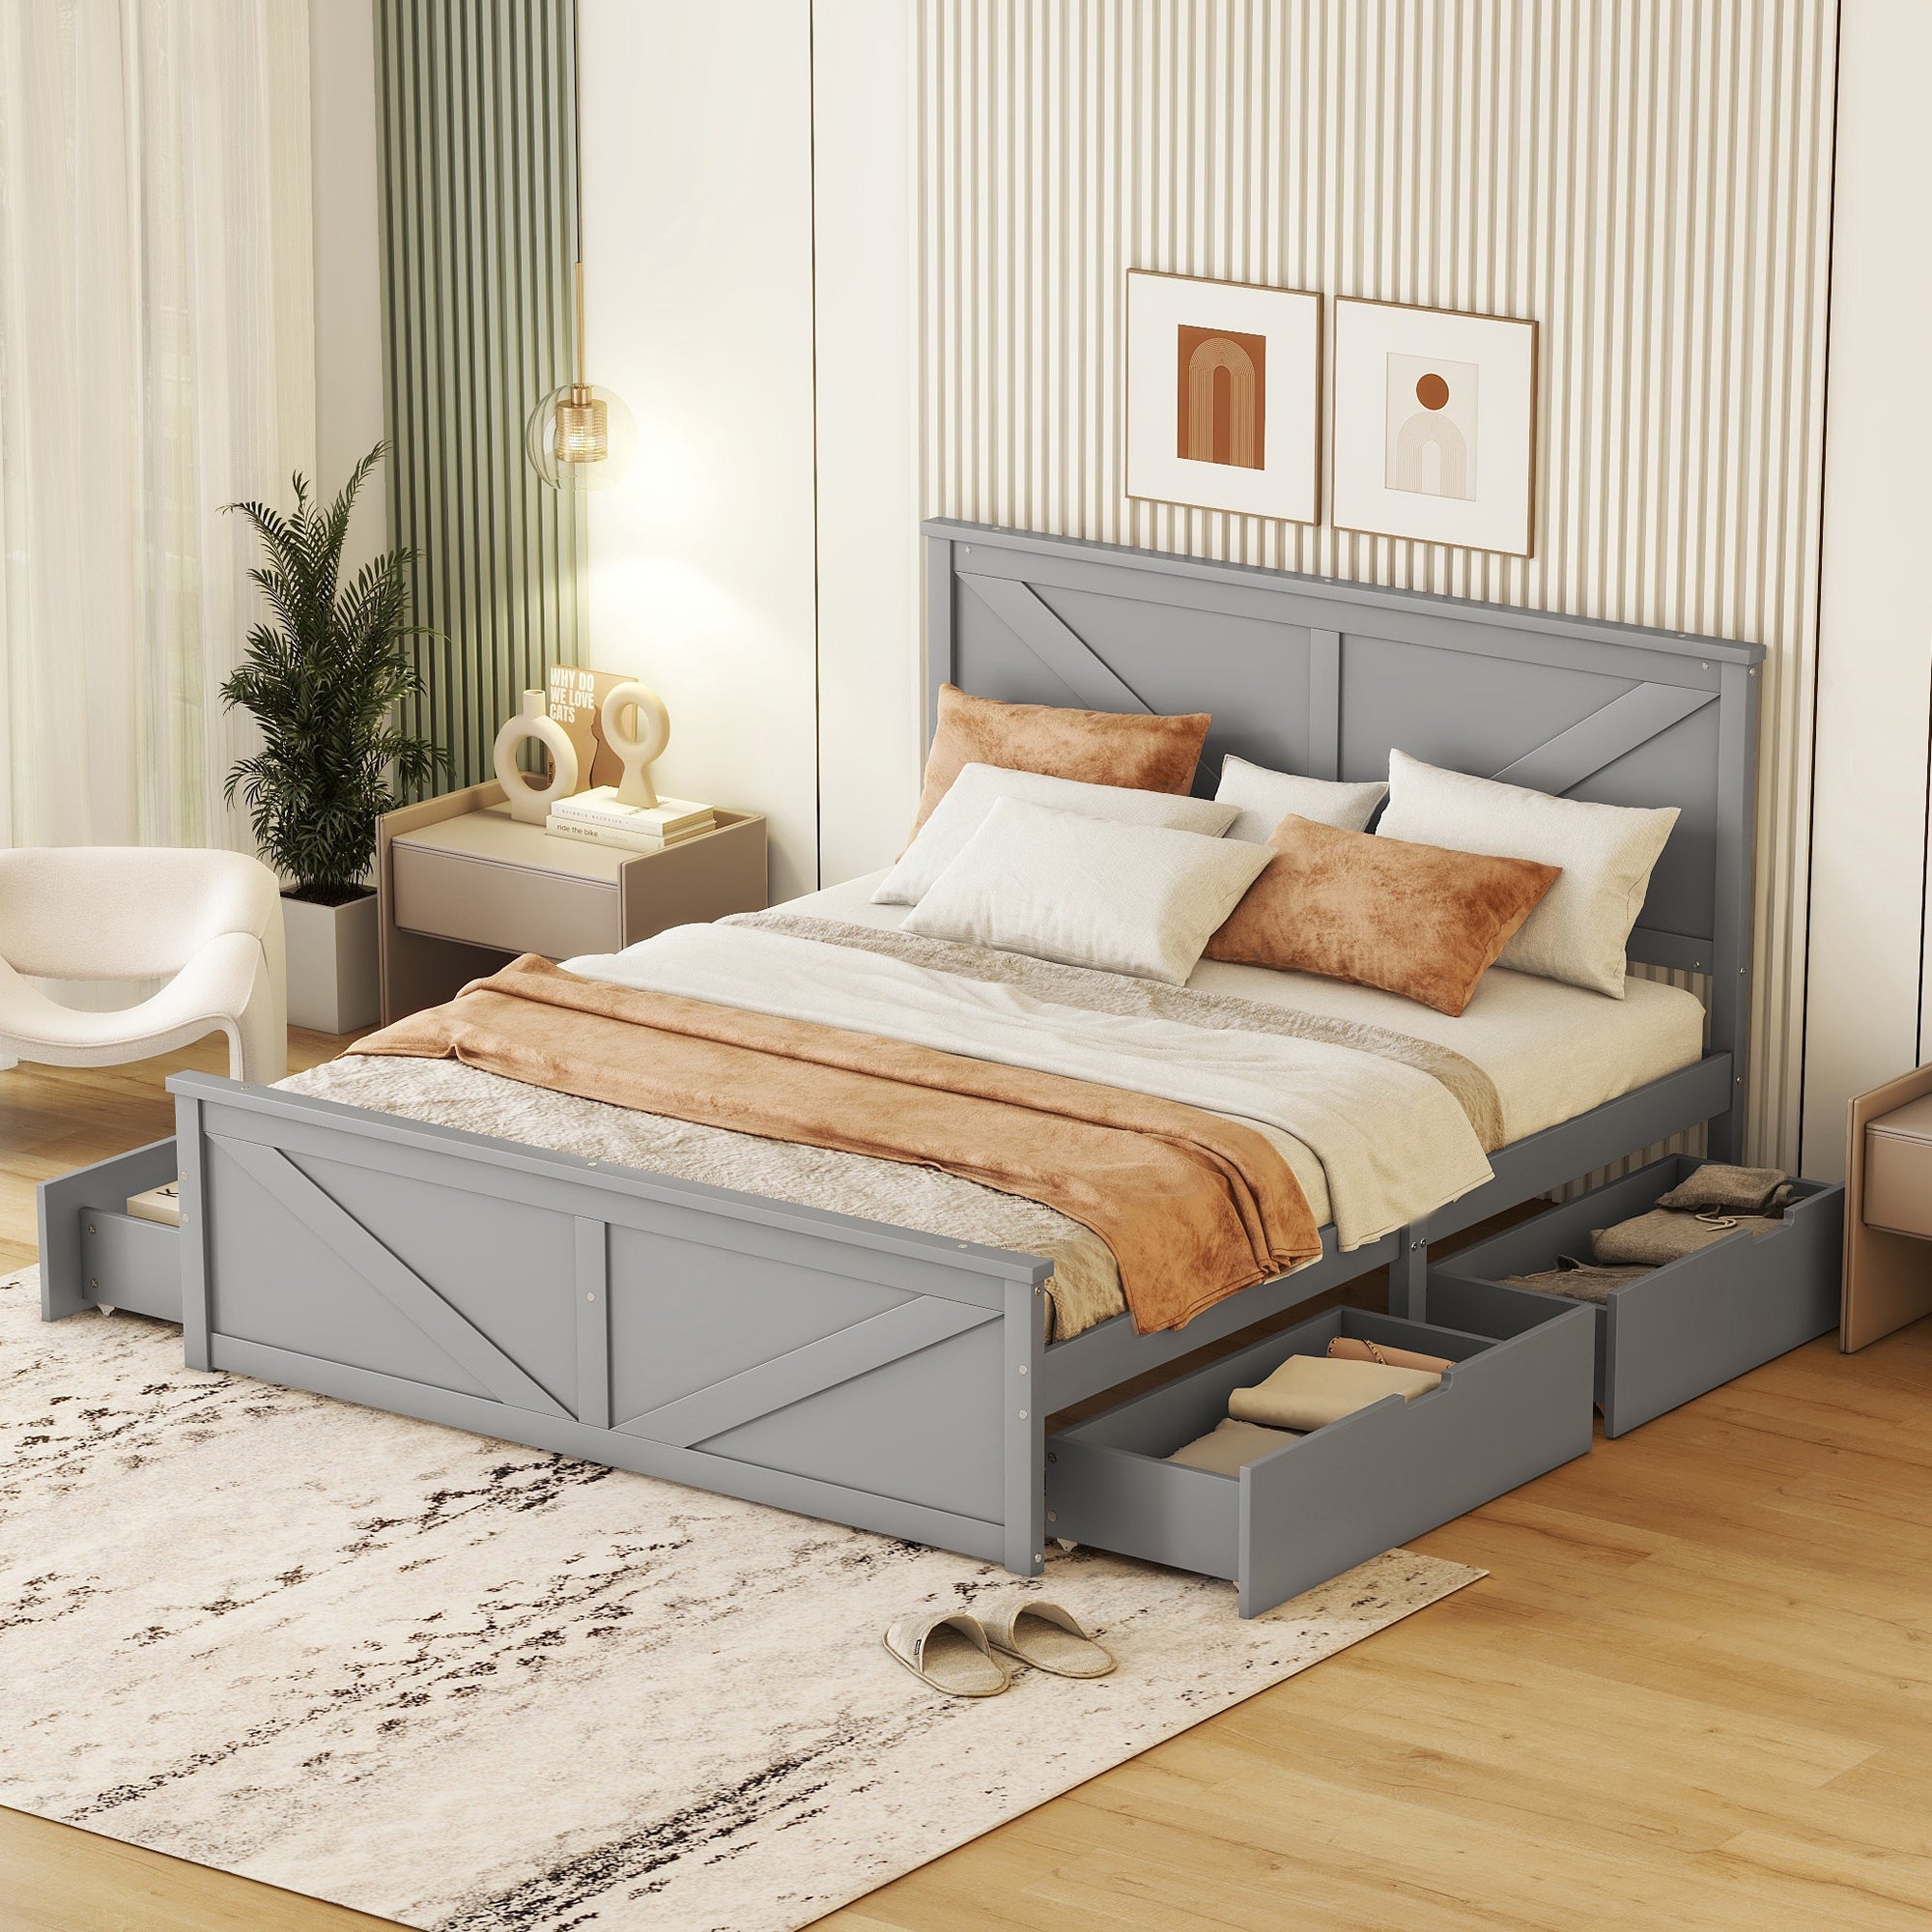 okwish 160x200 cm einfaches Plattformbett aus Holz, schlicht und stilvoll, mit vier Schubladen, grau